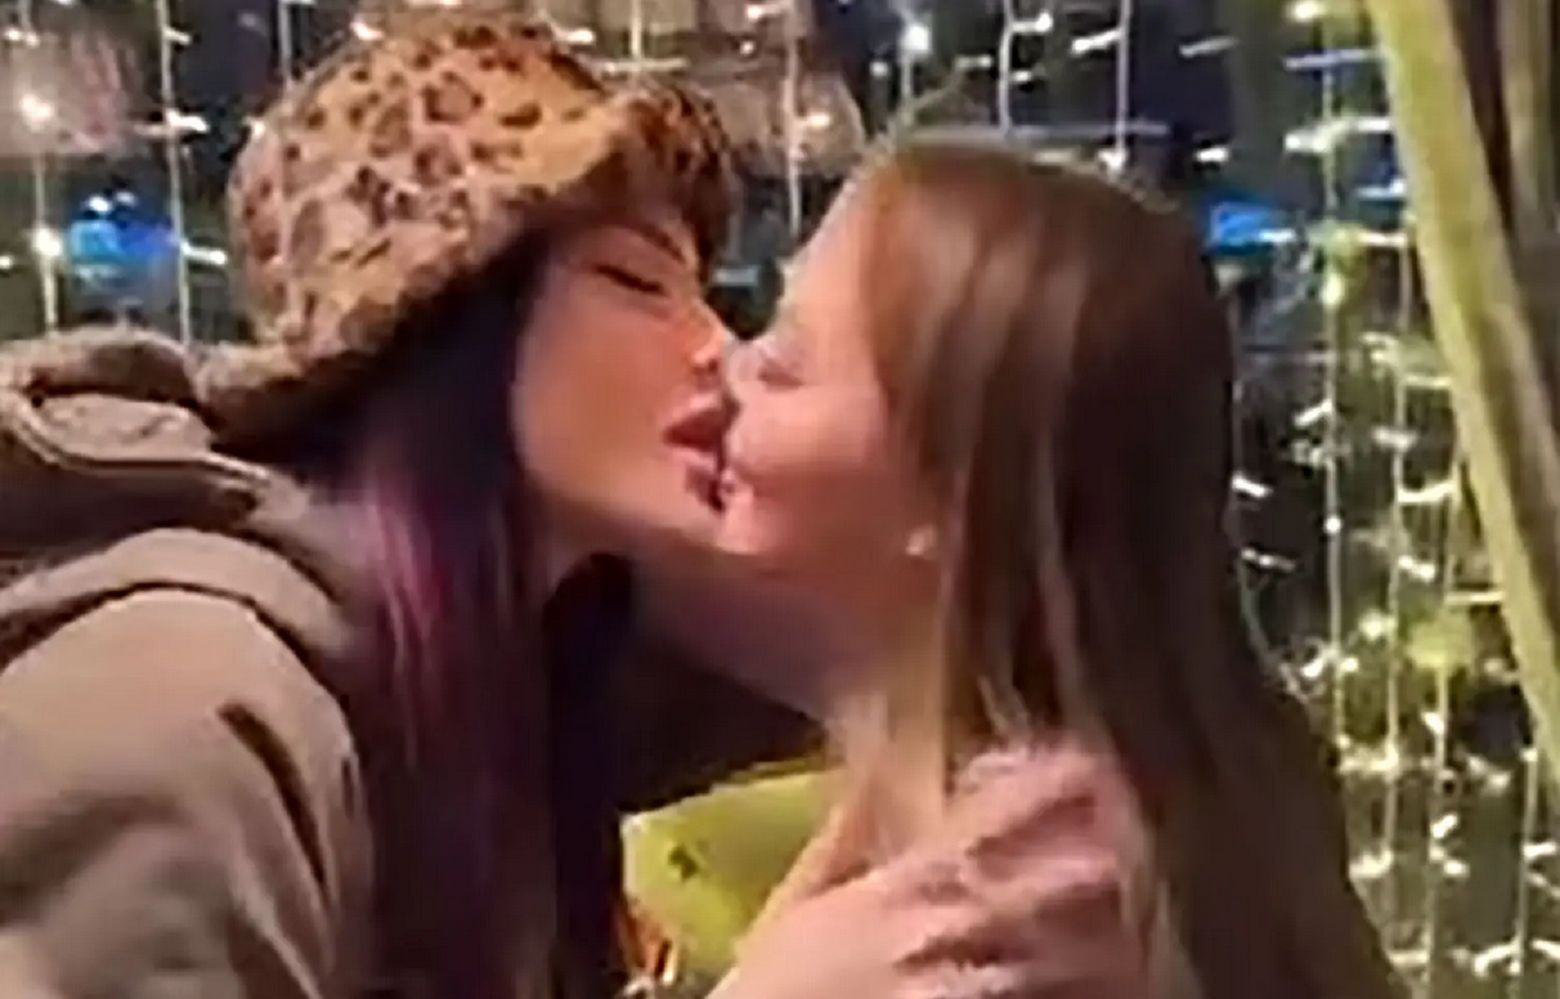 Rosjanki pocałowały się publicznie. Zostały zatrzymane przez policję